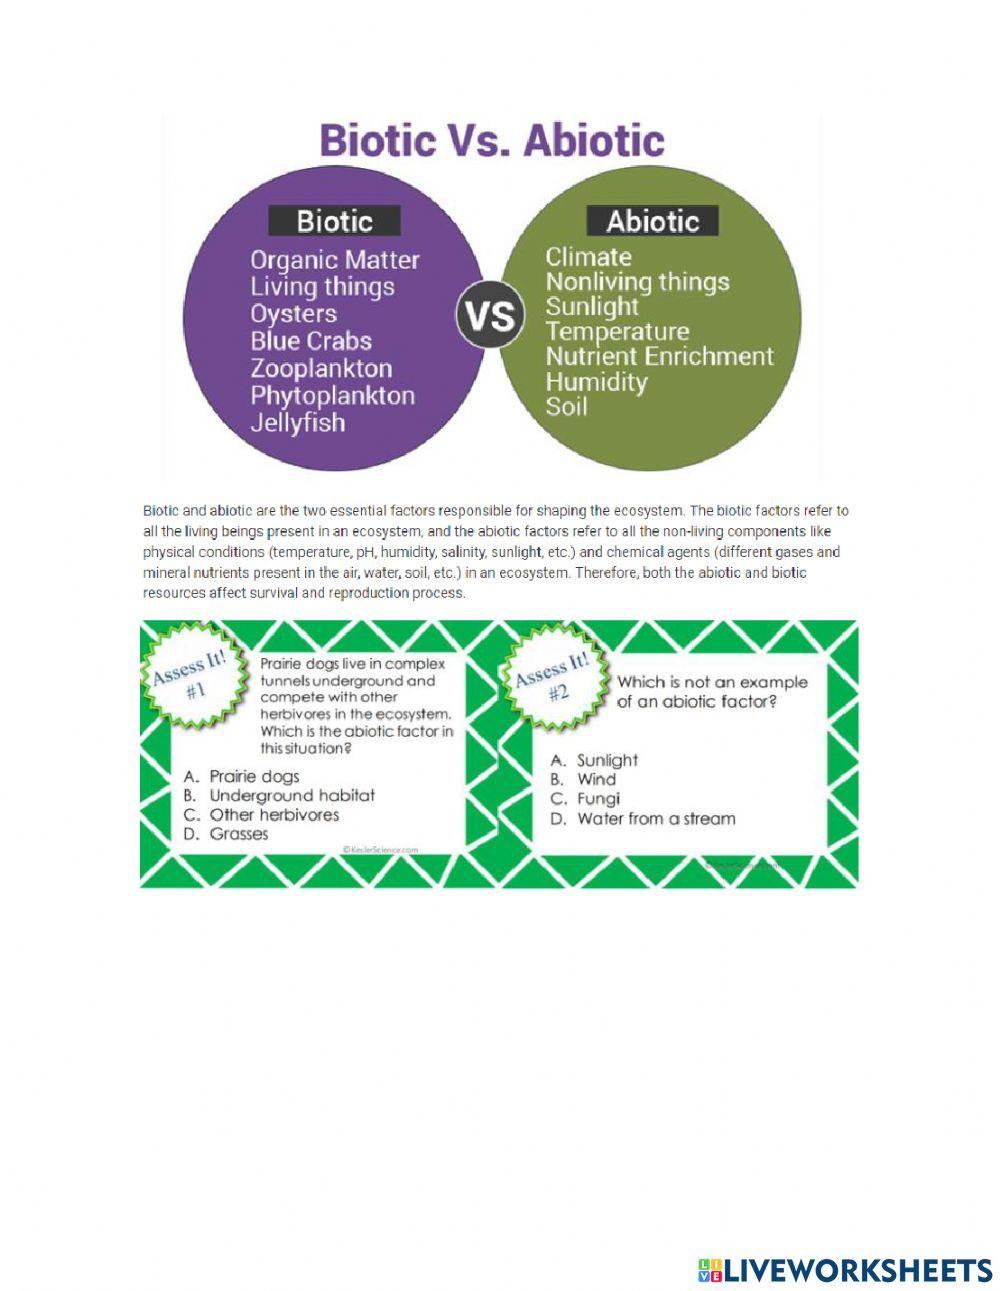 Biotic and abiotic factors